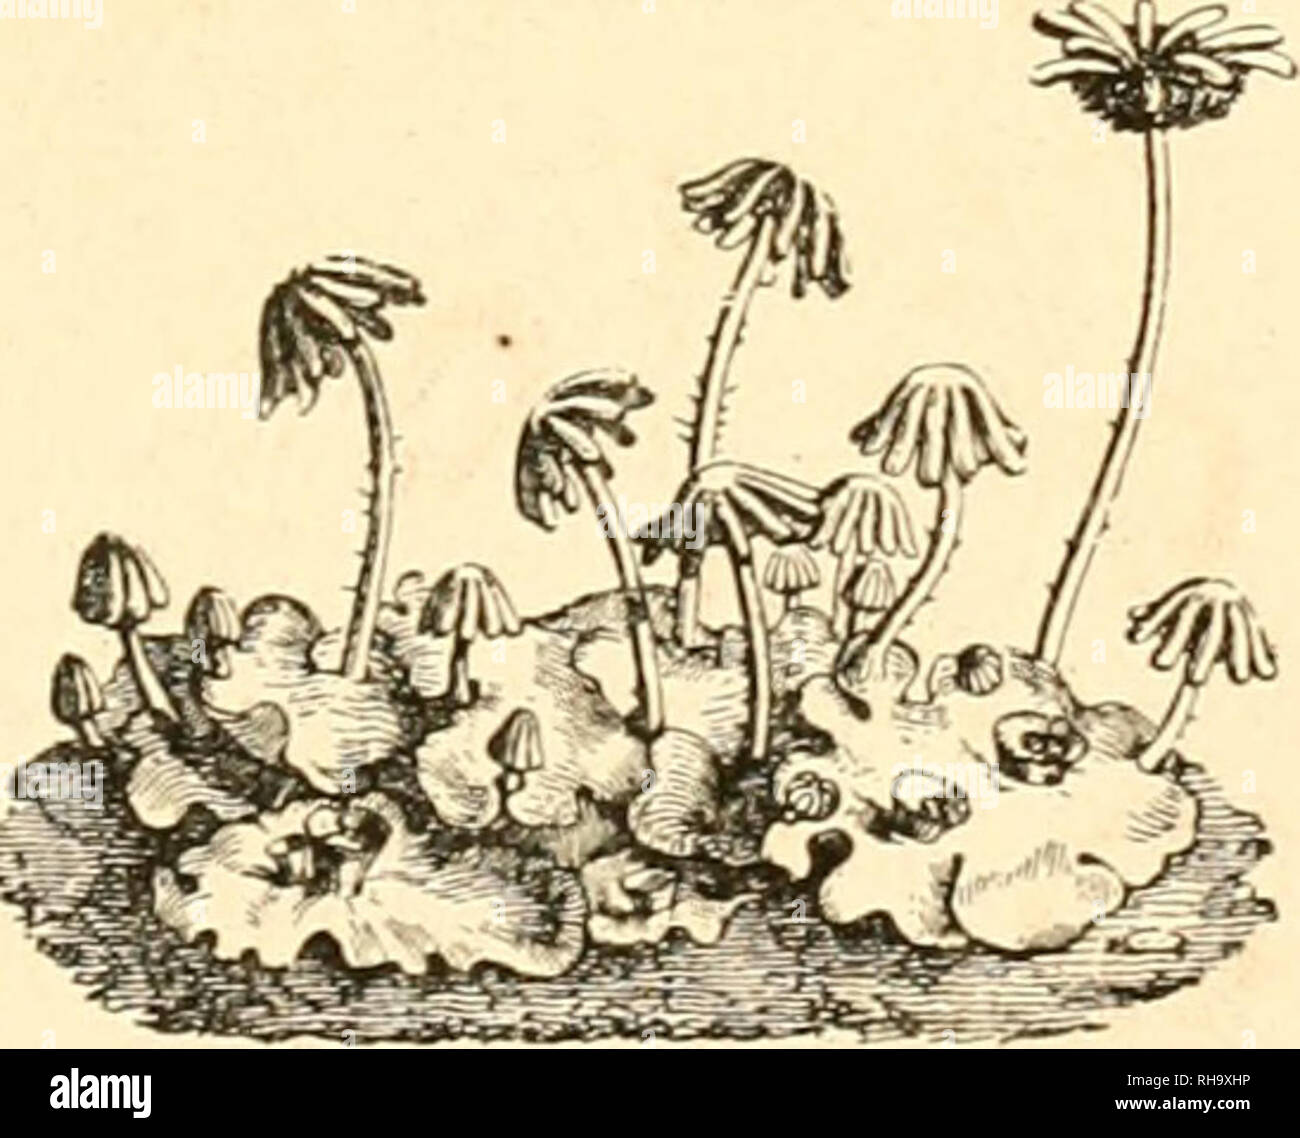 . Botanique cryptogamique, ou Histoire des familles naturelles des plantes infrieures. MARCHANDEES. FOSSOMBRONIA. RADDl Fruclificatio ecosta- termine infra tlialli apicem emergens, demum dorsalis. Periclnetium obconico-campanulatum, ore crenato dentatove. Pergonium nullum, Archegonia pauca. Epigonium persisteus, vertice lacero. Sporangium circnmscissum. Zootheca? dorsales costae impositre, nuda?. METZGEBIA, RAÃDI. Fructificacio e latere ven- trali costae mÃ©dise thalli emergens. Periclnetium renlricosum demum bipartitum. Perigoninm nullum. Archegonia pauca. Epigonium persi- stens, vertice lace Stock Photo